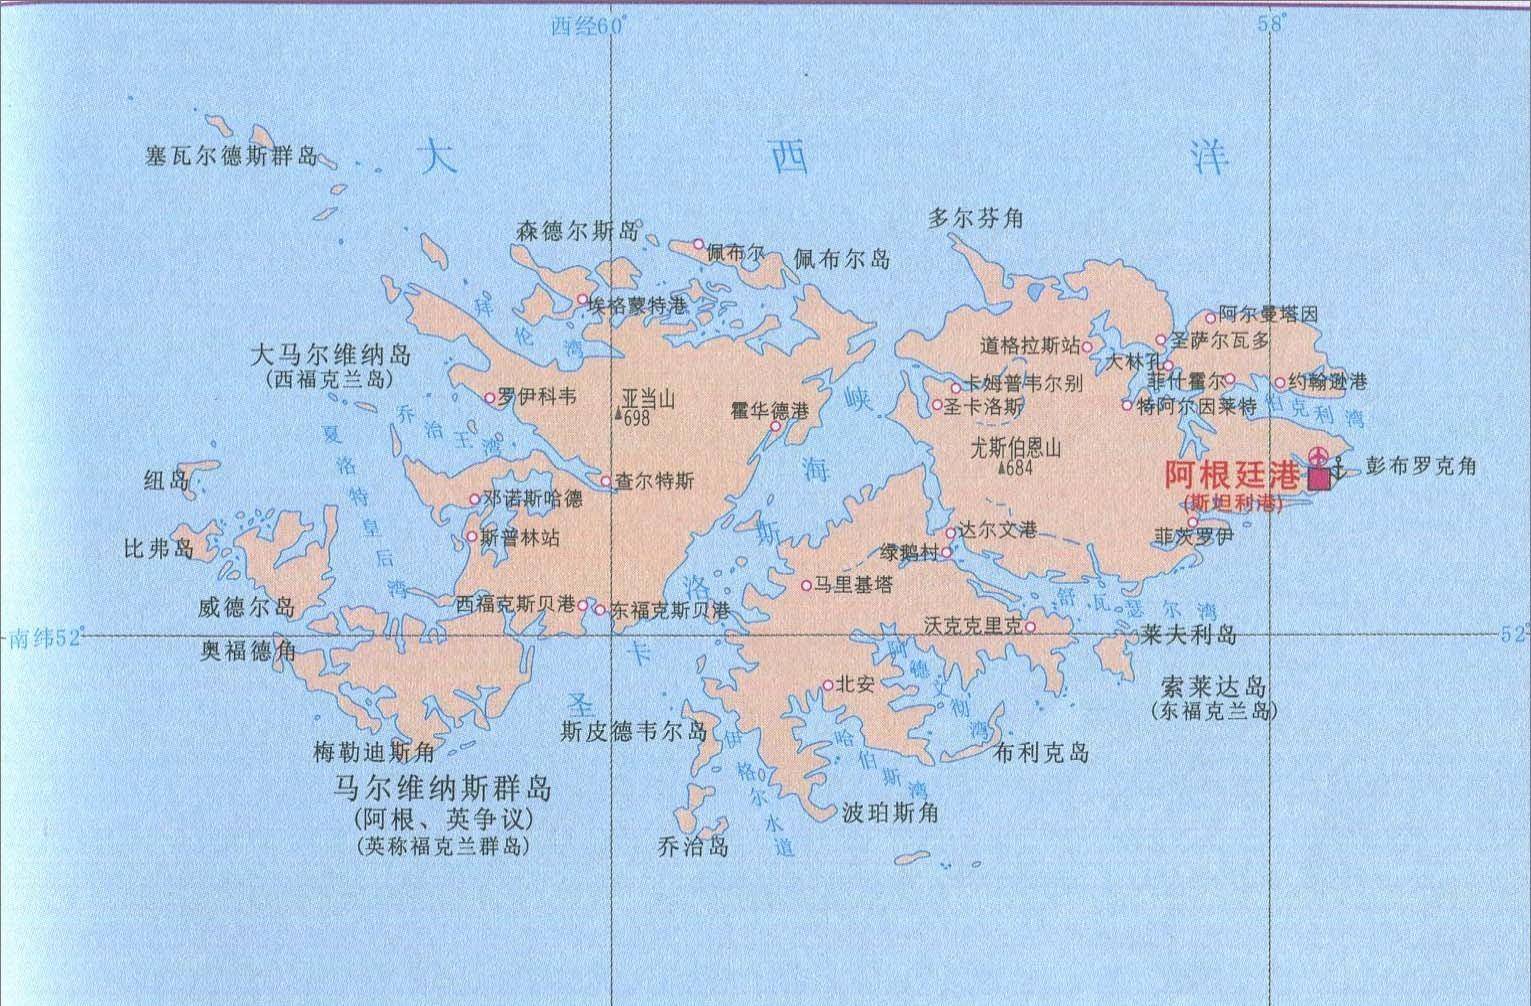 马尔维纳斯群岛大英帝国最后的颜面,跨越半个地球夺回的海外领地